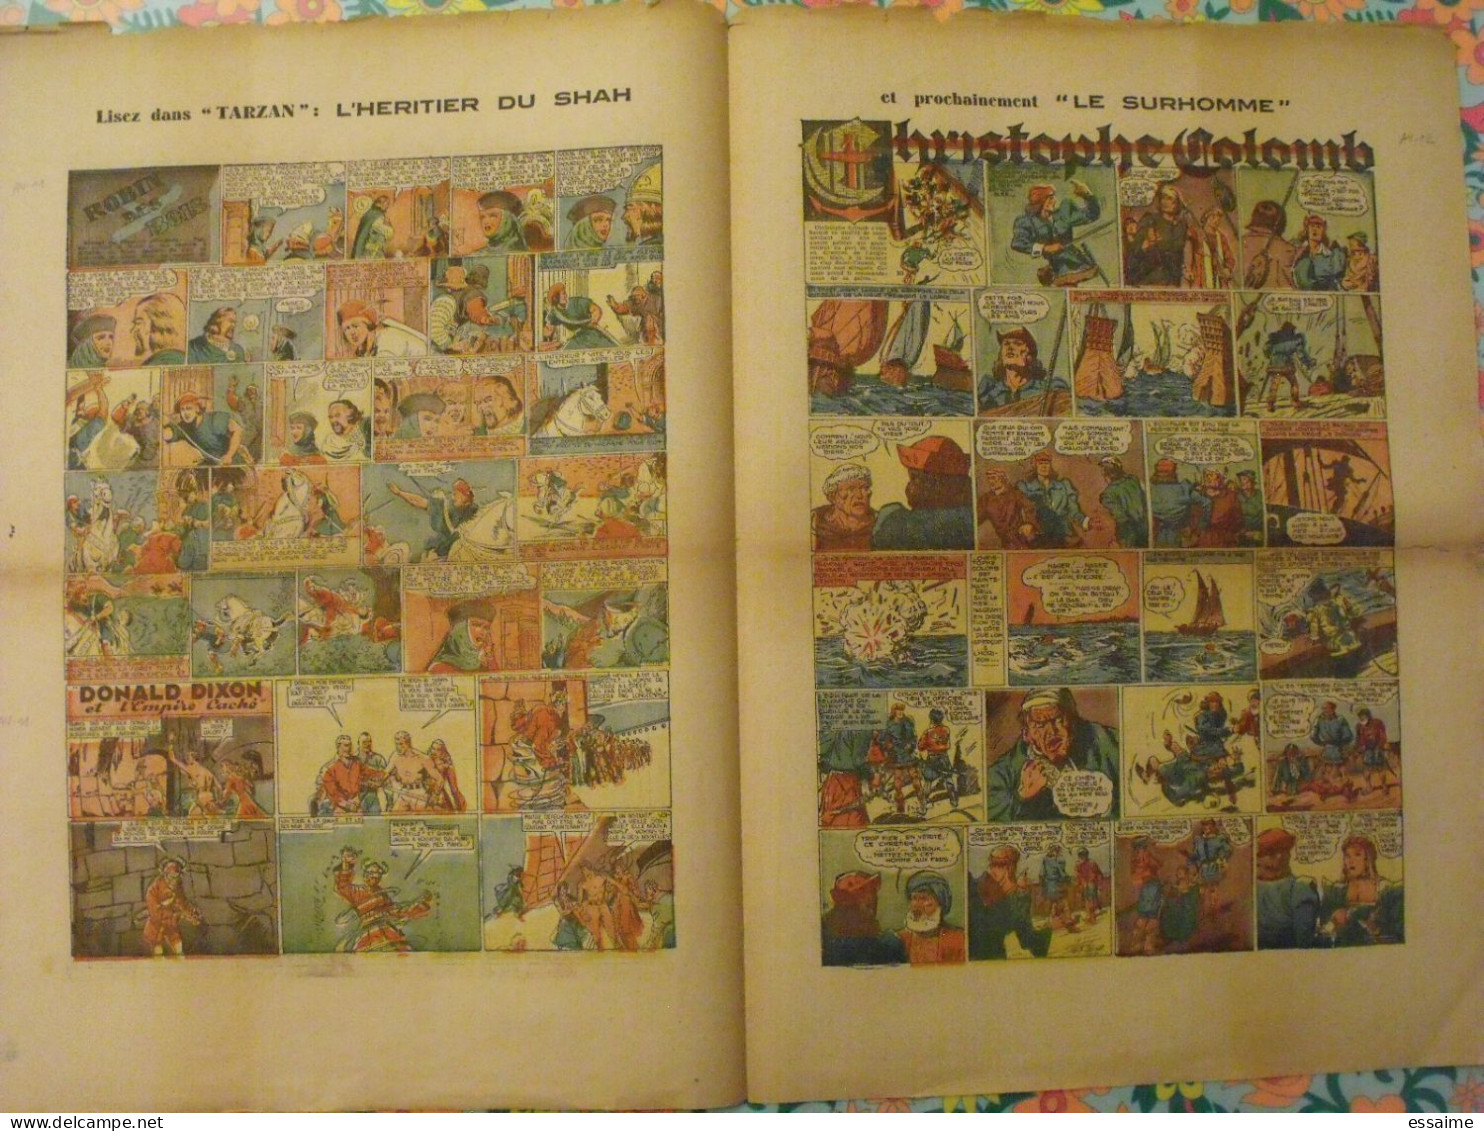 5 numéros de l'Audacieux de 1941-42. le corsaire de la mort, le roi du far-west, christophe colomb. A redécouvrir